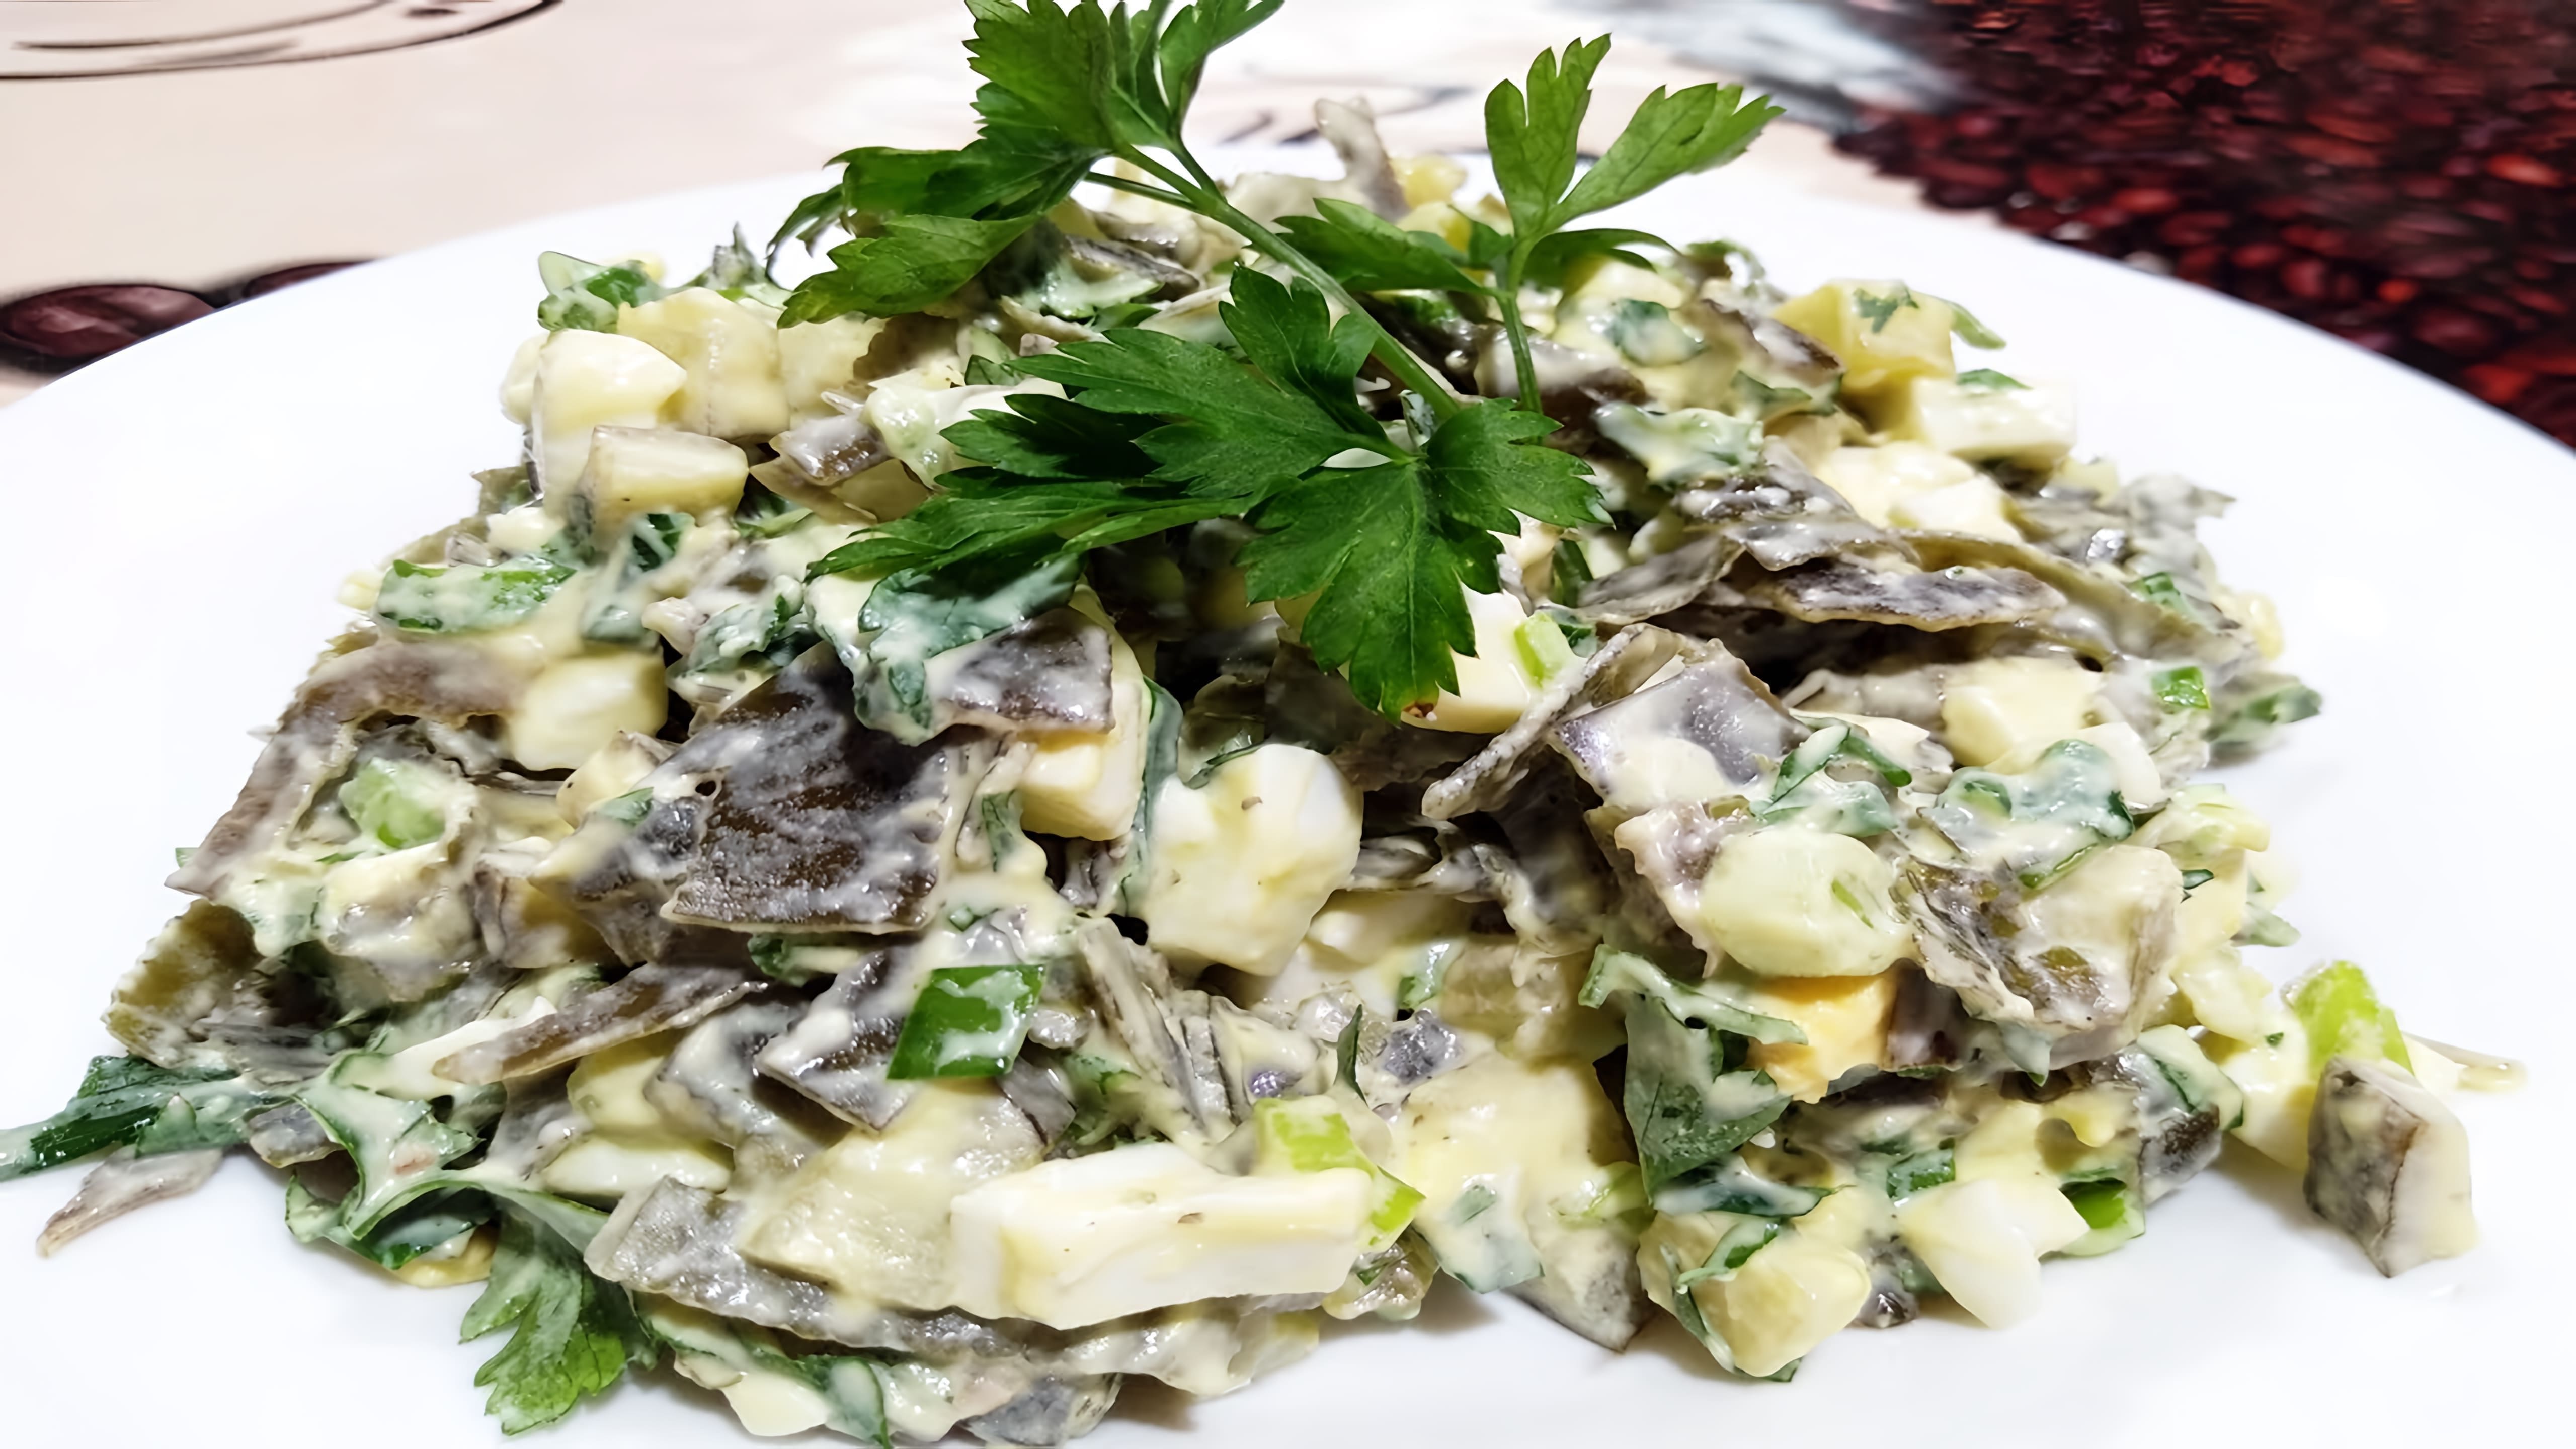 Салат из морской капусты с солеными огурцами - это вкусное и полезное блюдо, которое можно приготовить в домашних условиях